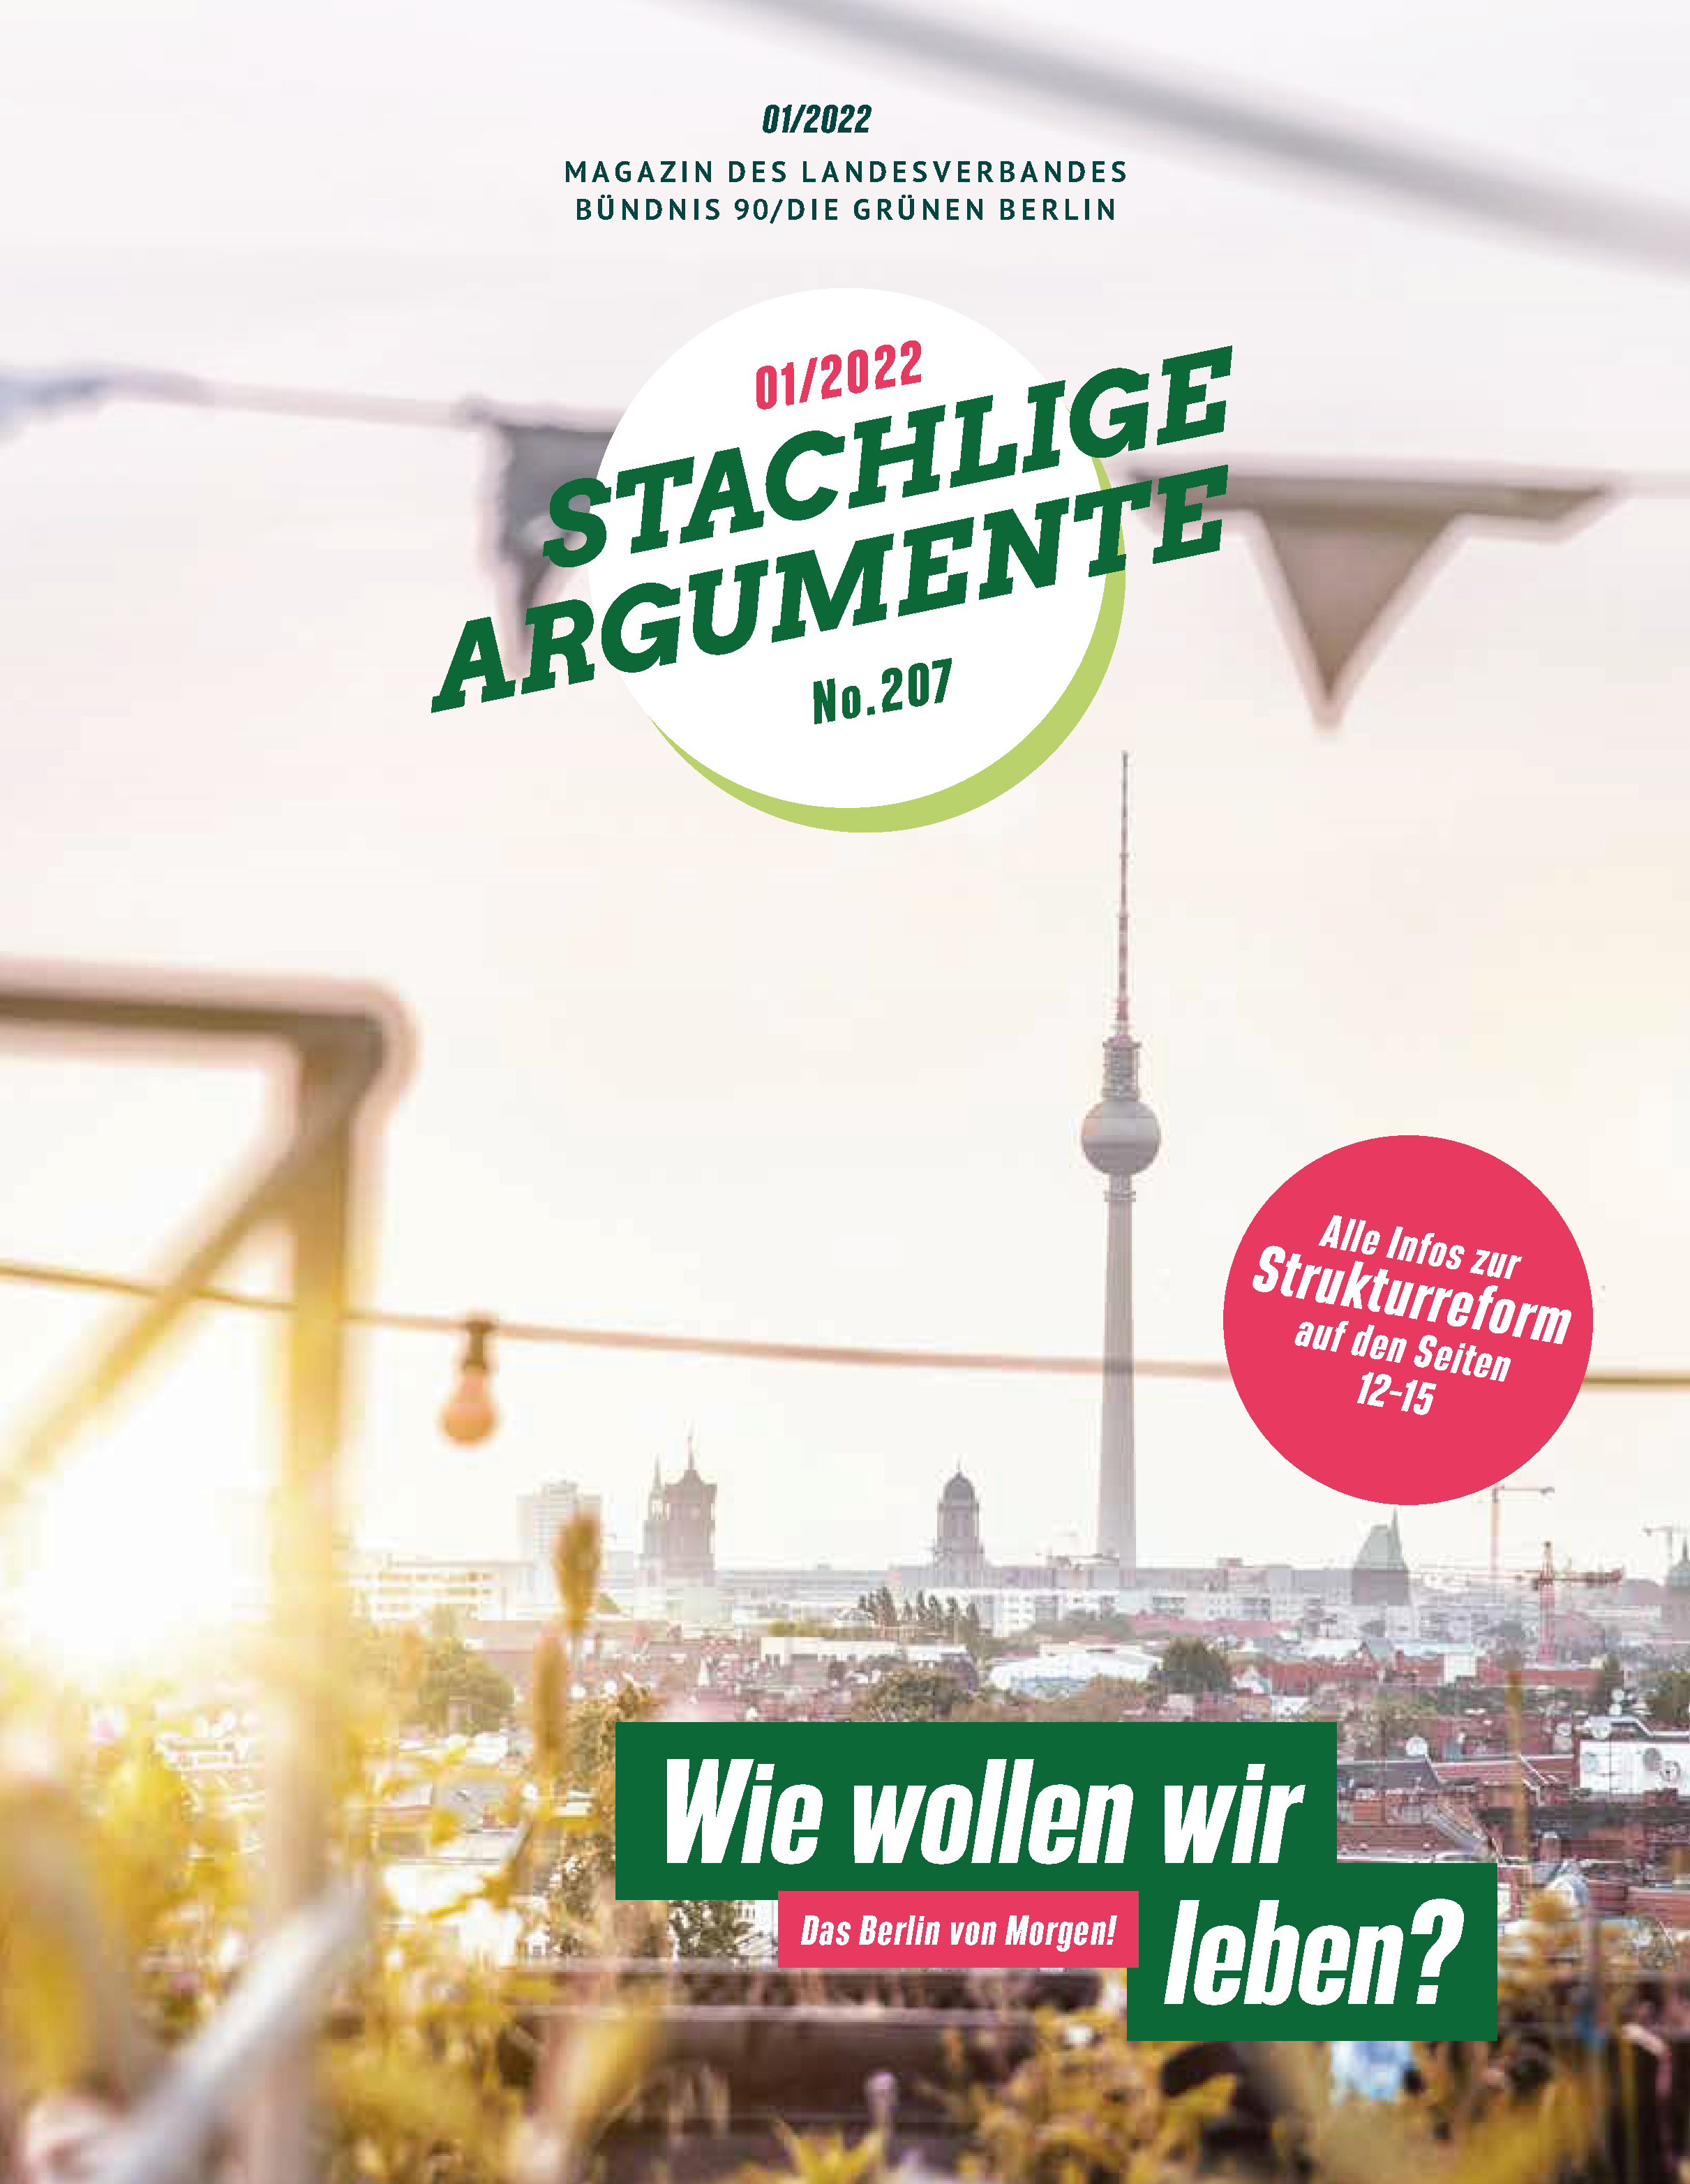 Titelseite der Stachligen Argumente, Ausgabe No. 207. Im Hintergrund ein Berlin Panorama, im Vordergrund ist eine Wimpelkette zu erkennen, die Stimmung ist ruhig und entspannt. Darauf die Schriftzüge "Stachlige Argumente", "Wie wollen wir leben? Das Berlin von Morgen!"